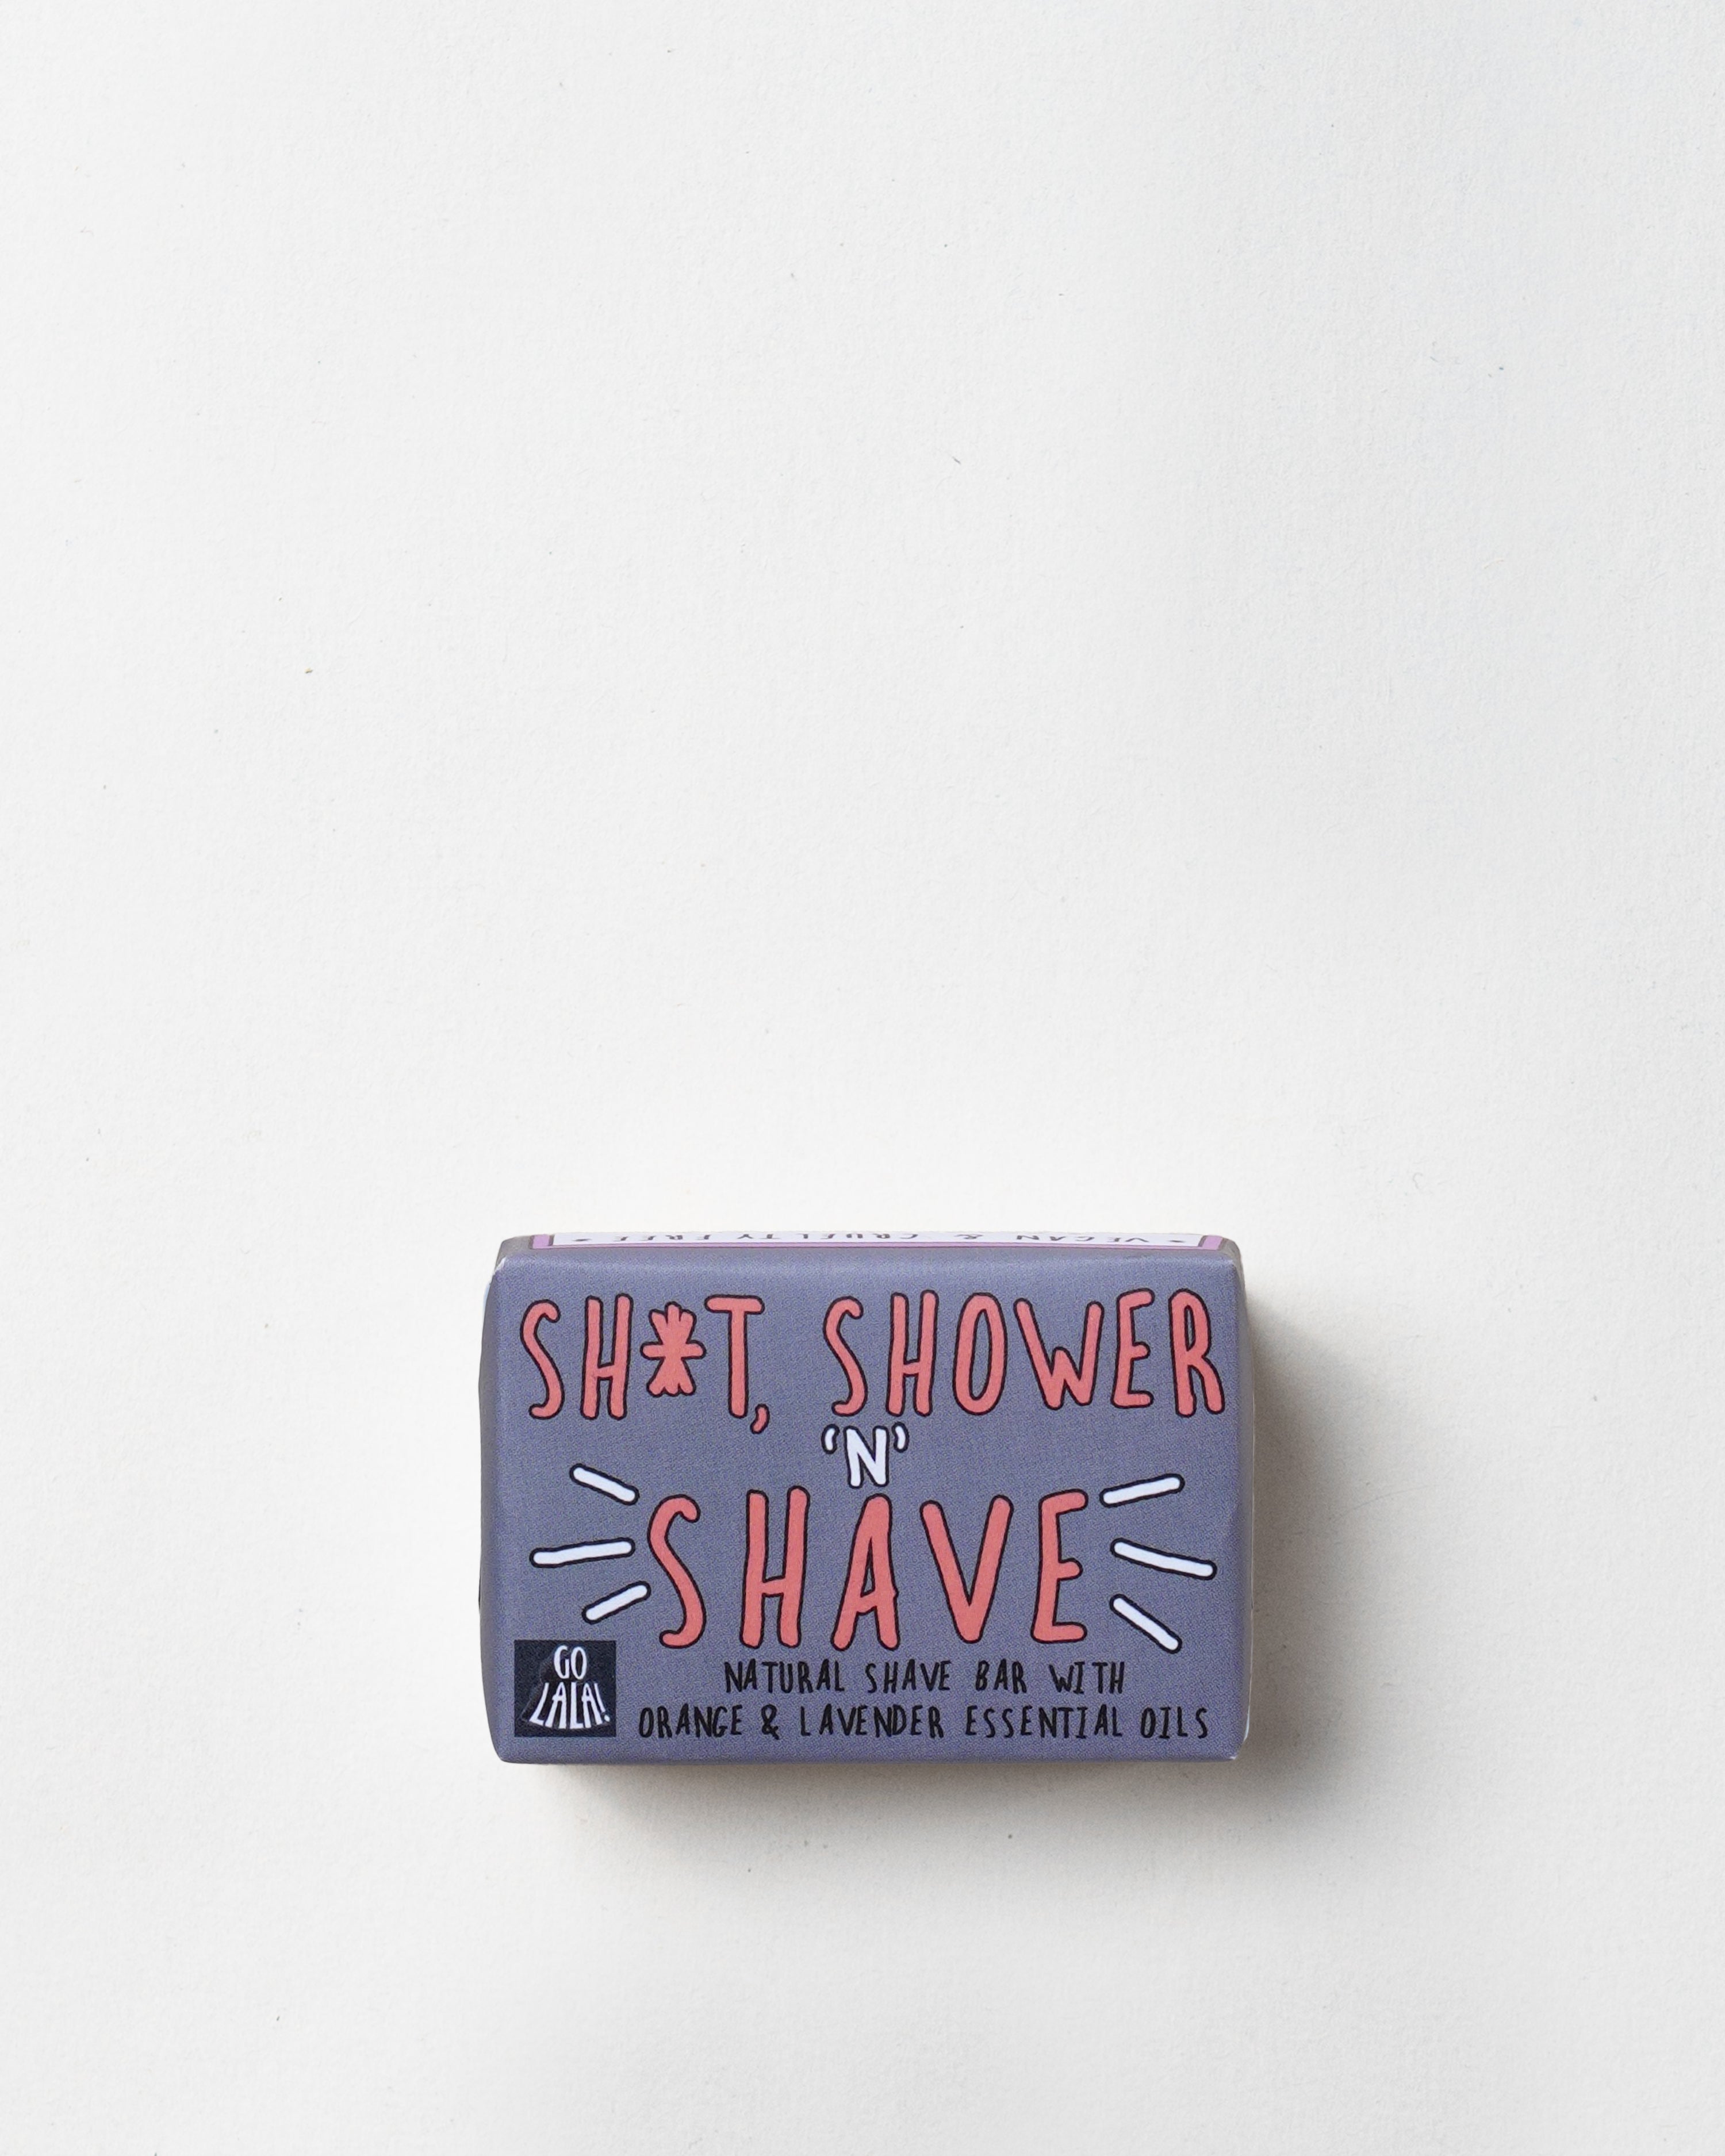 Shave Bar/Sh*t Shower Shave